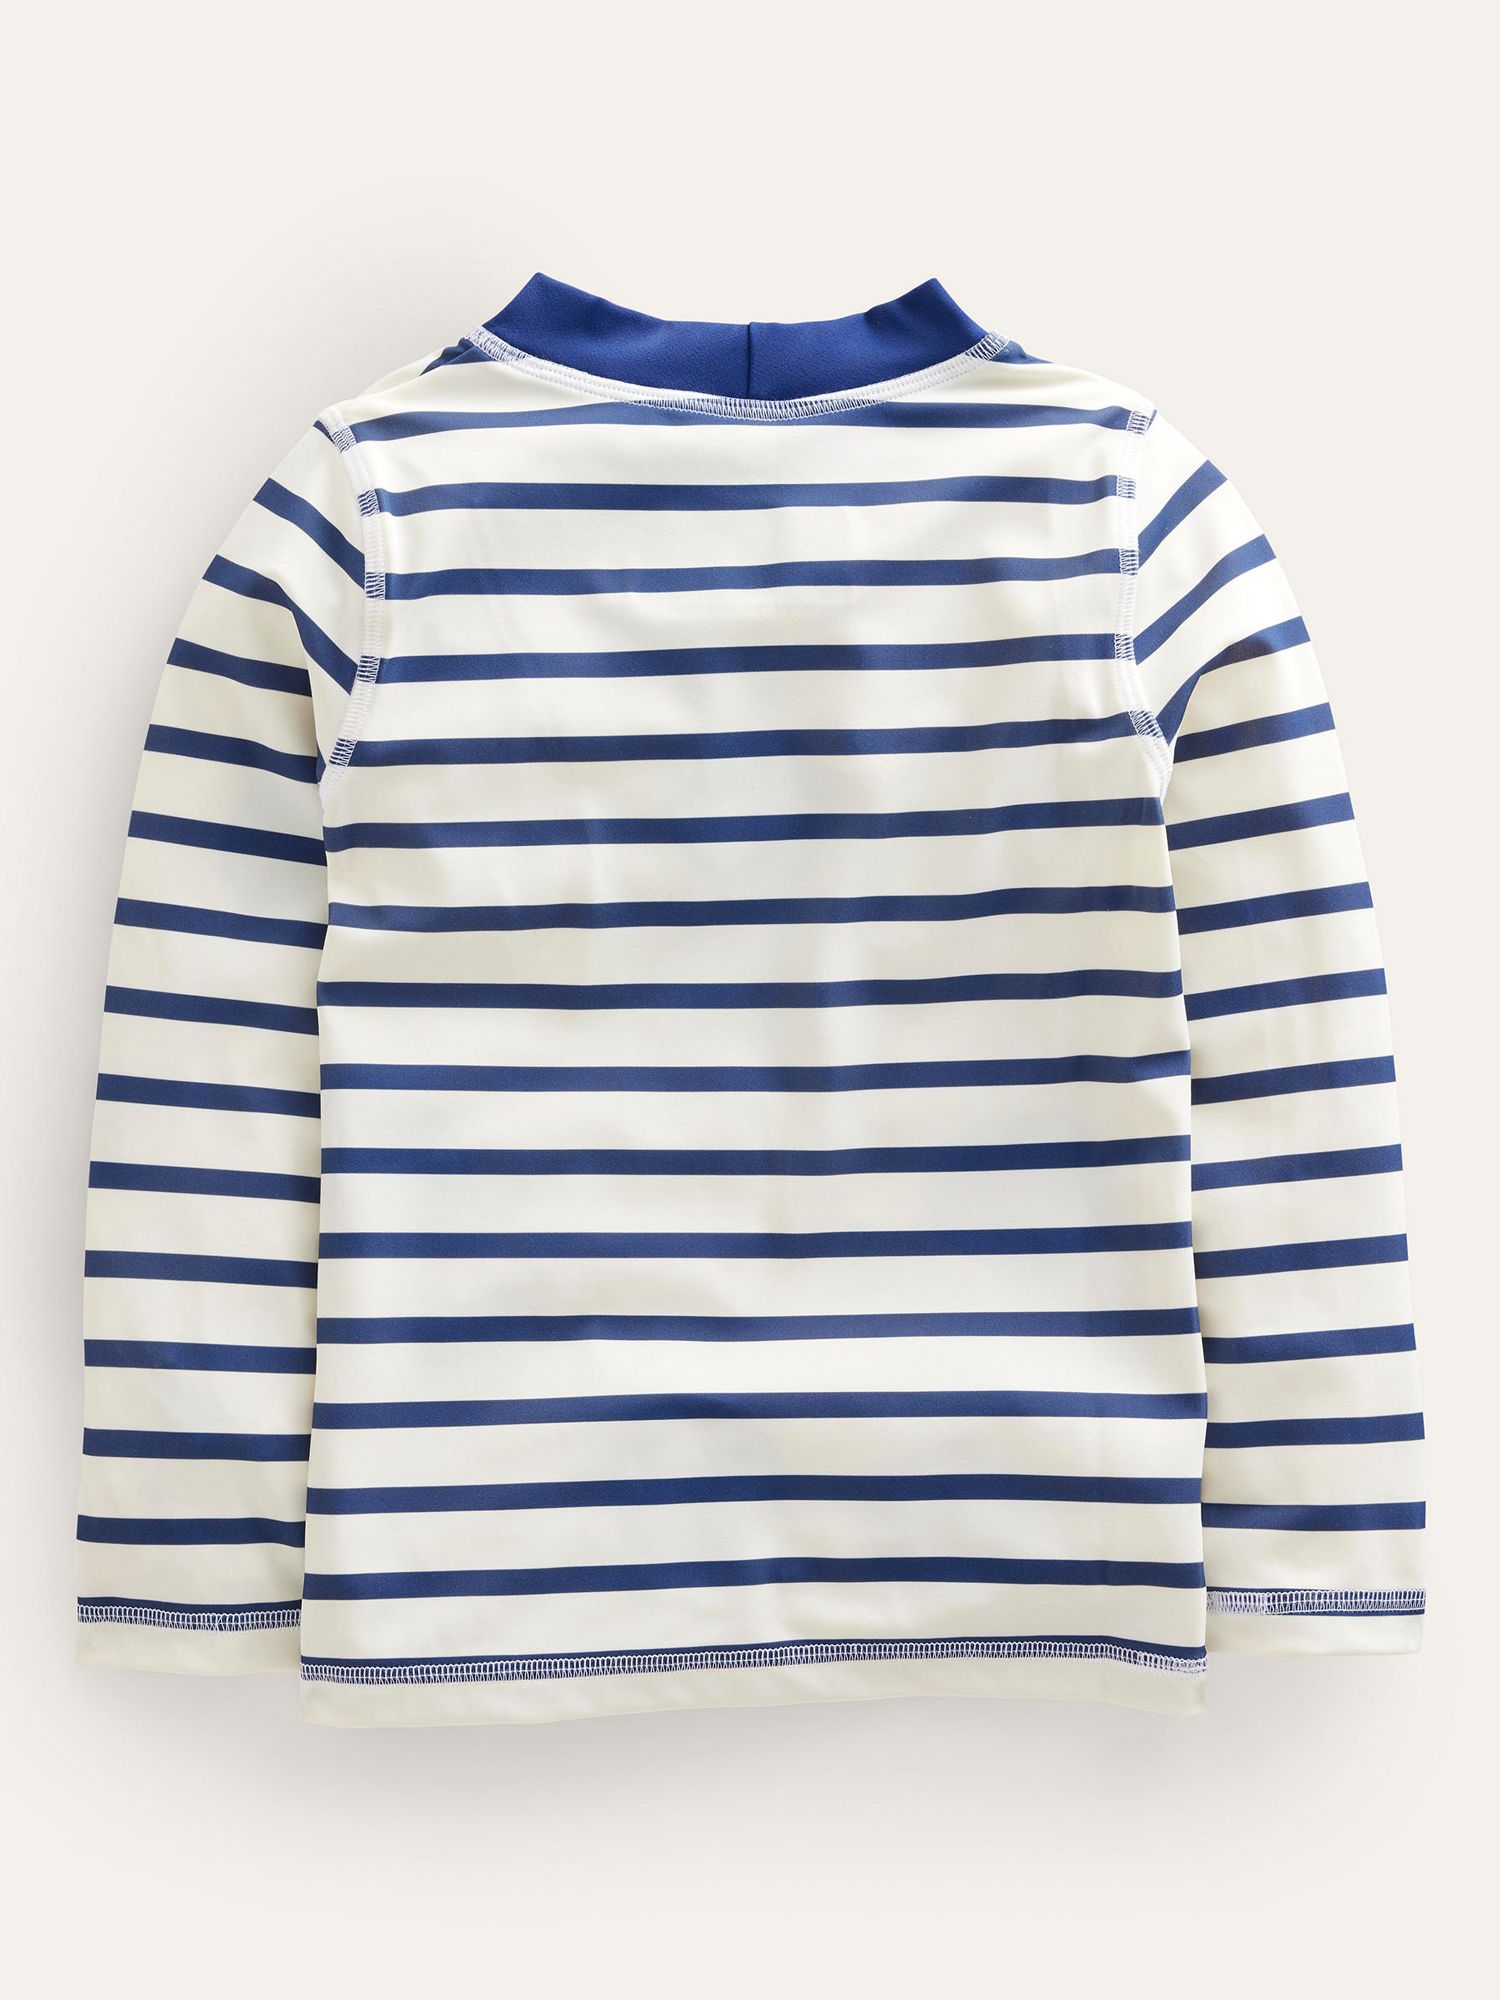 Mini Boden Kids' Breton Rash Vest, Navy/Ivory Stripe, 2-3 years